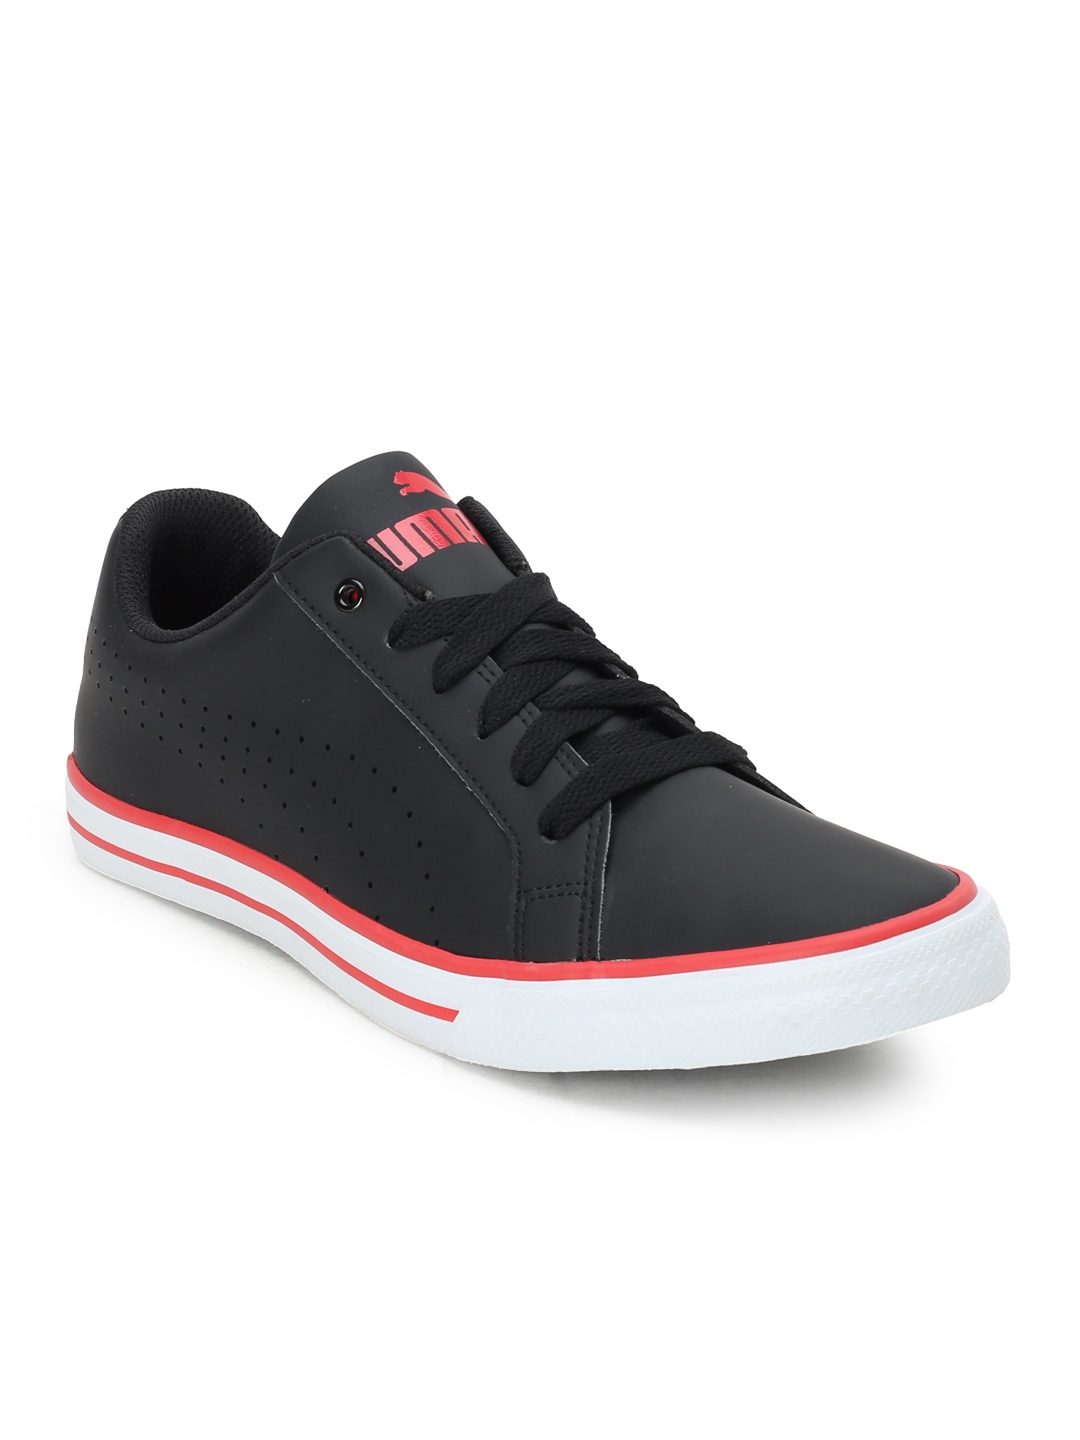 Buy Puma Men Black Sneakers Casual Shoes for Men 2353337